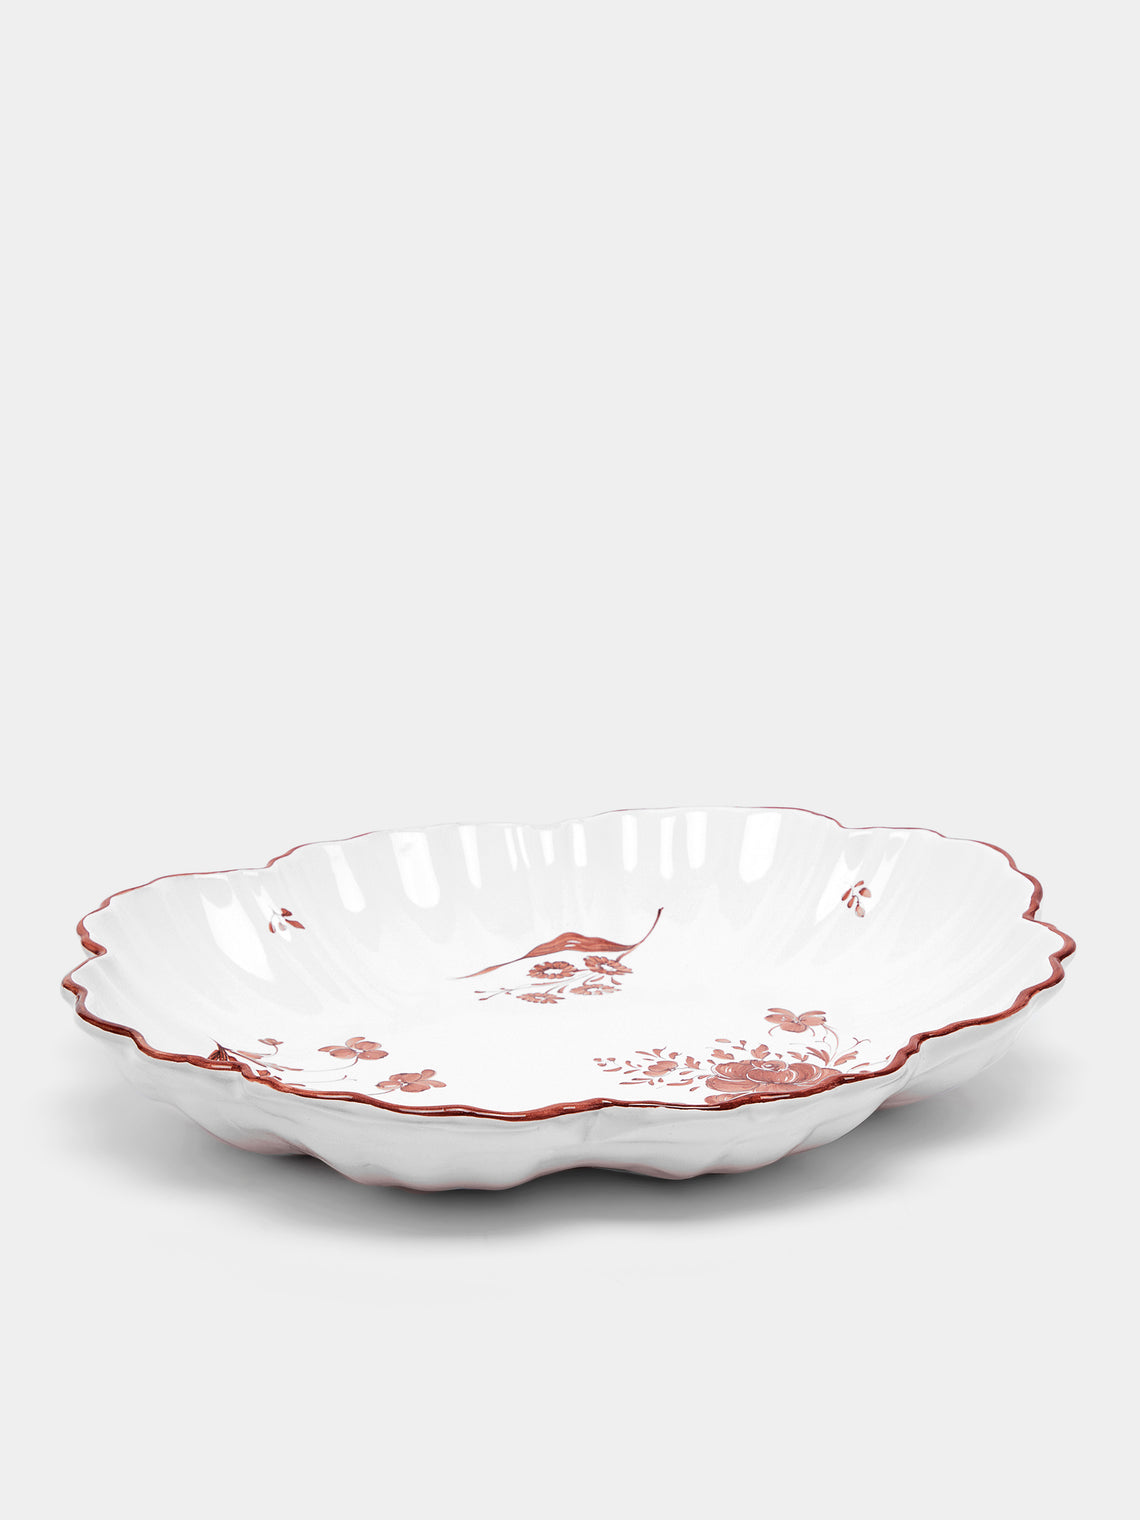 Z.d.G - Camaïeu Hand-Painted Ceramic Large Serving Platter - Brown - ABASK